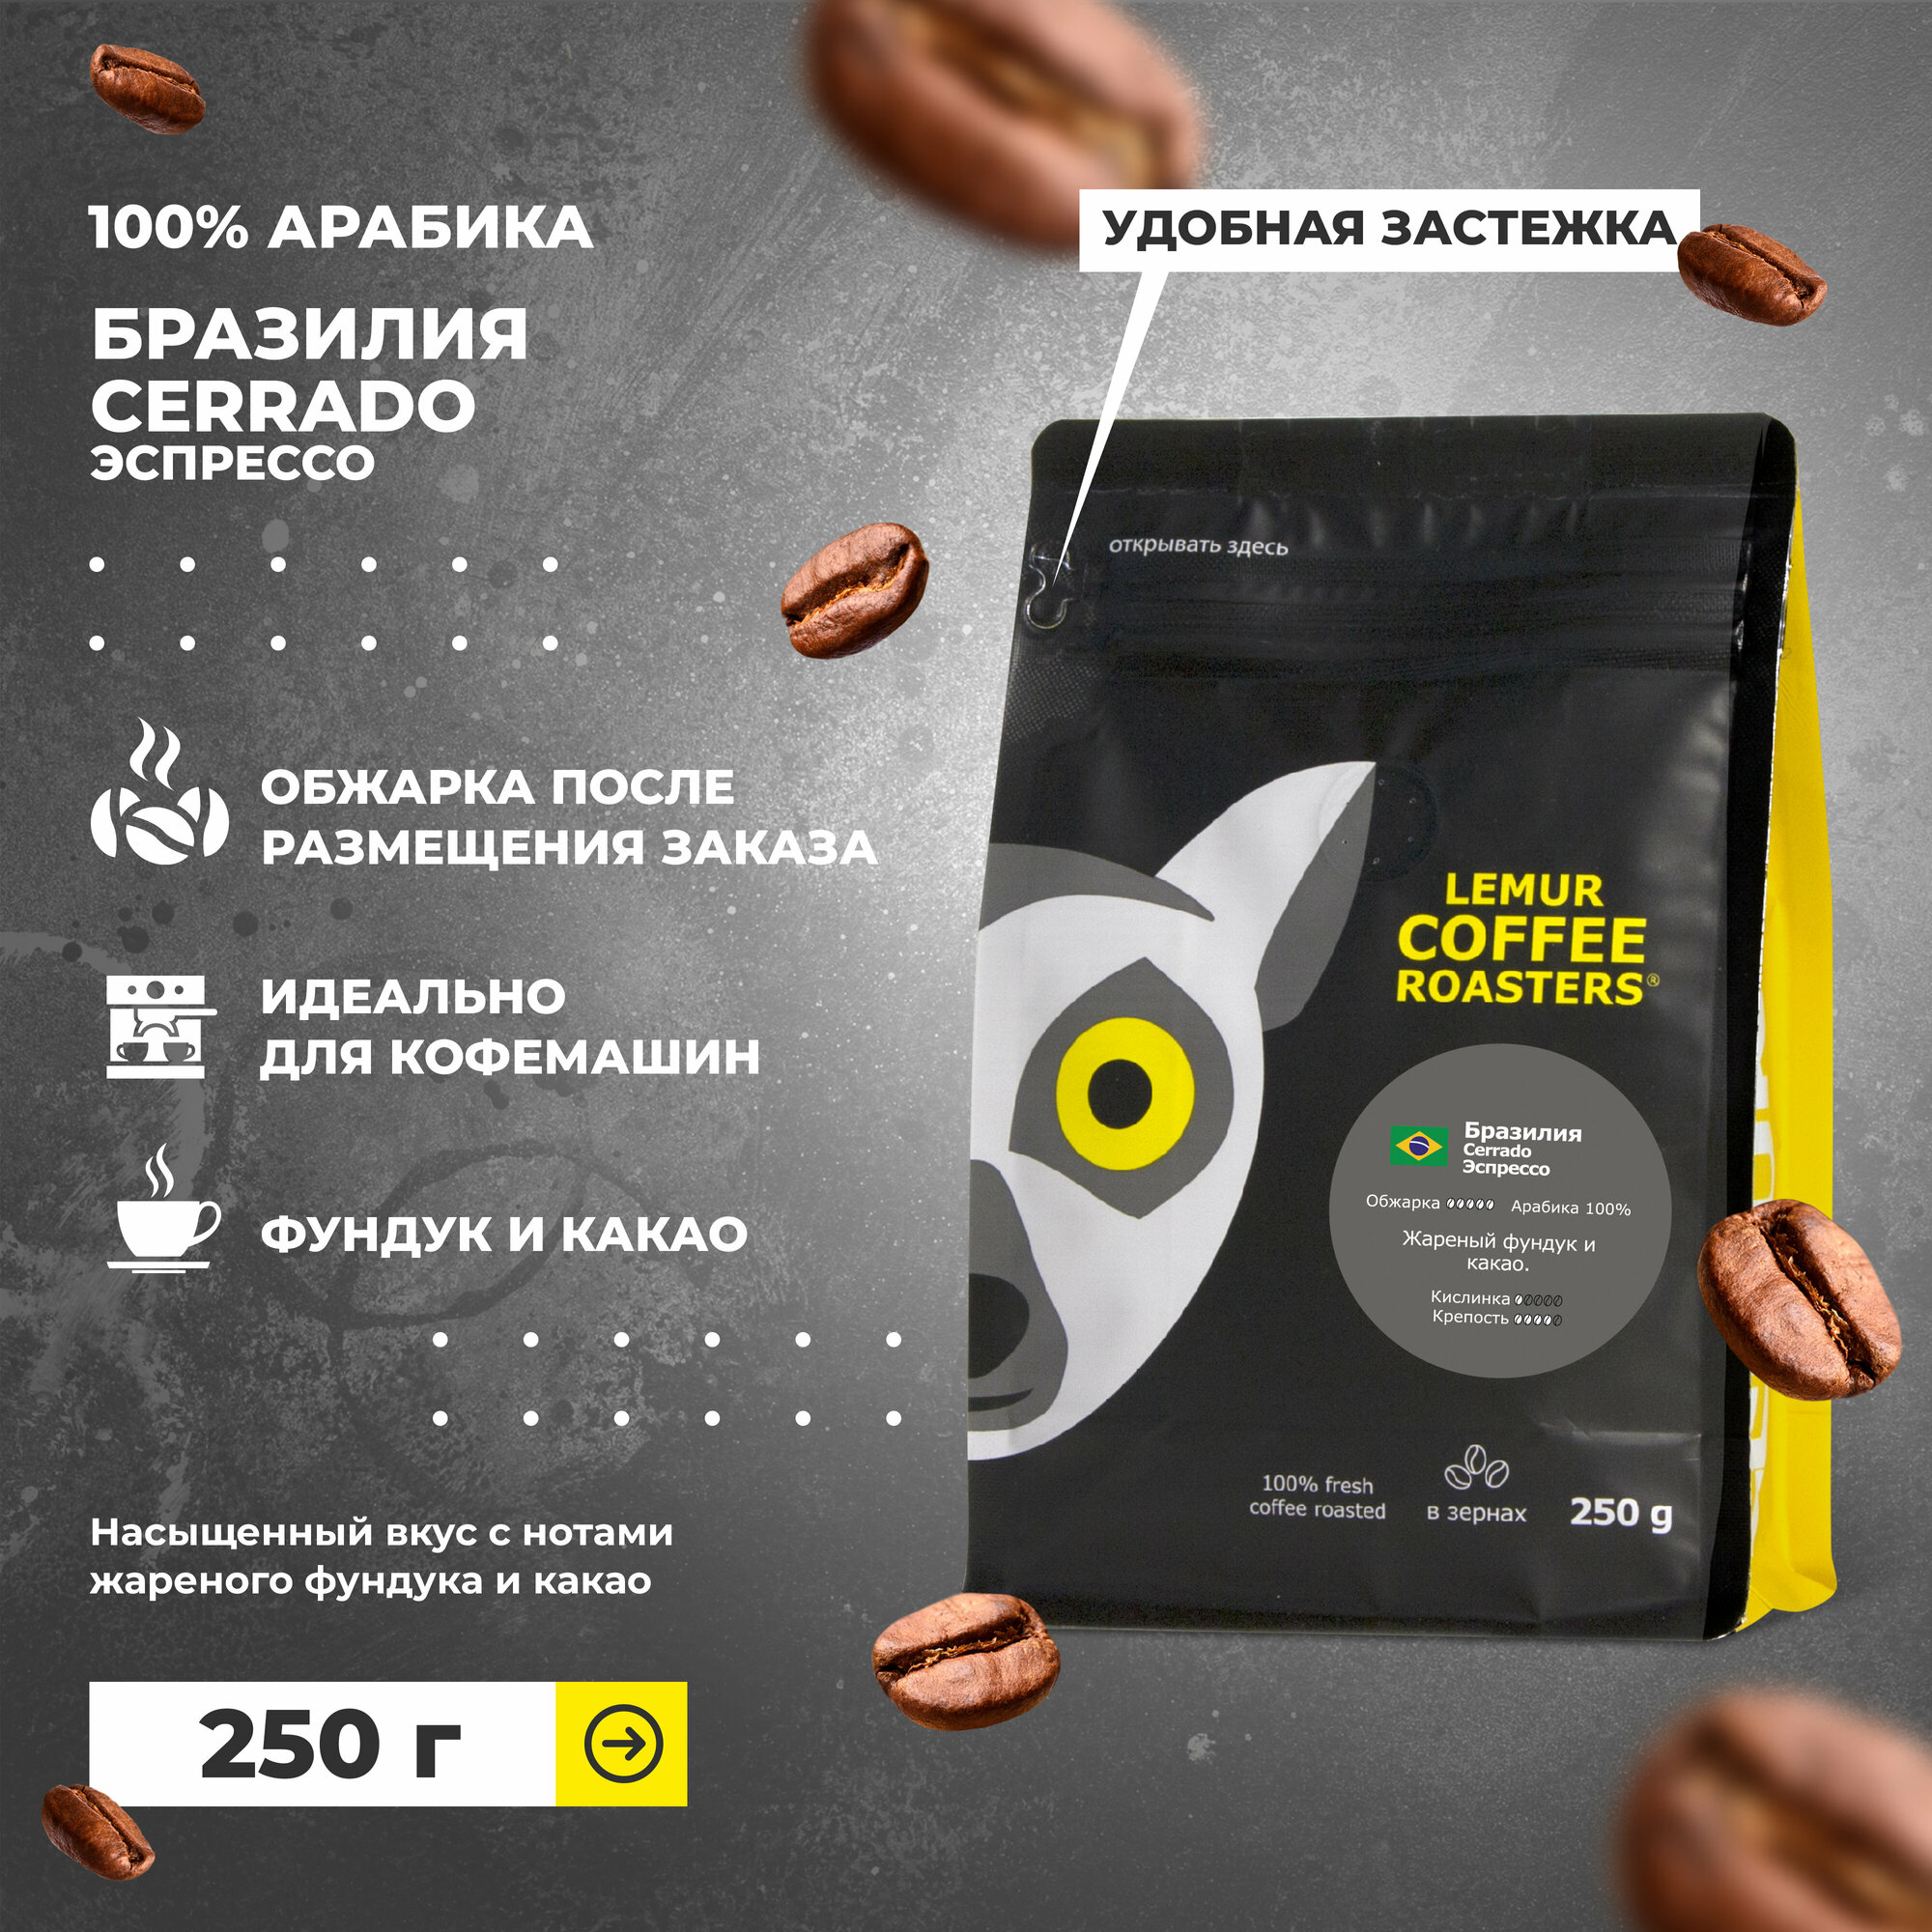 Свежеобжаренный кофе в зернах Бразилия Серрадо Эспрессо / Cerrado Lemur Coffee Roasters, 250 г